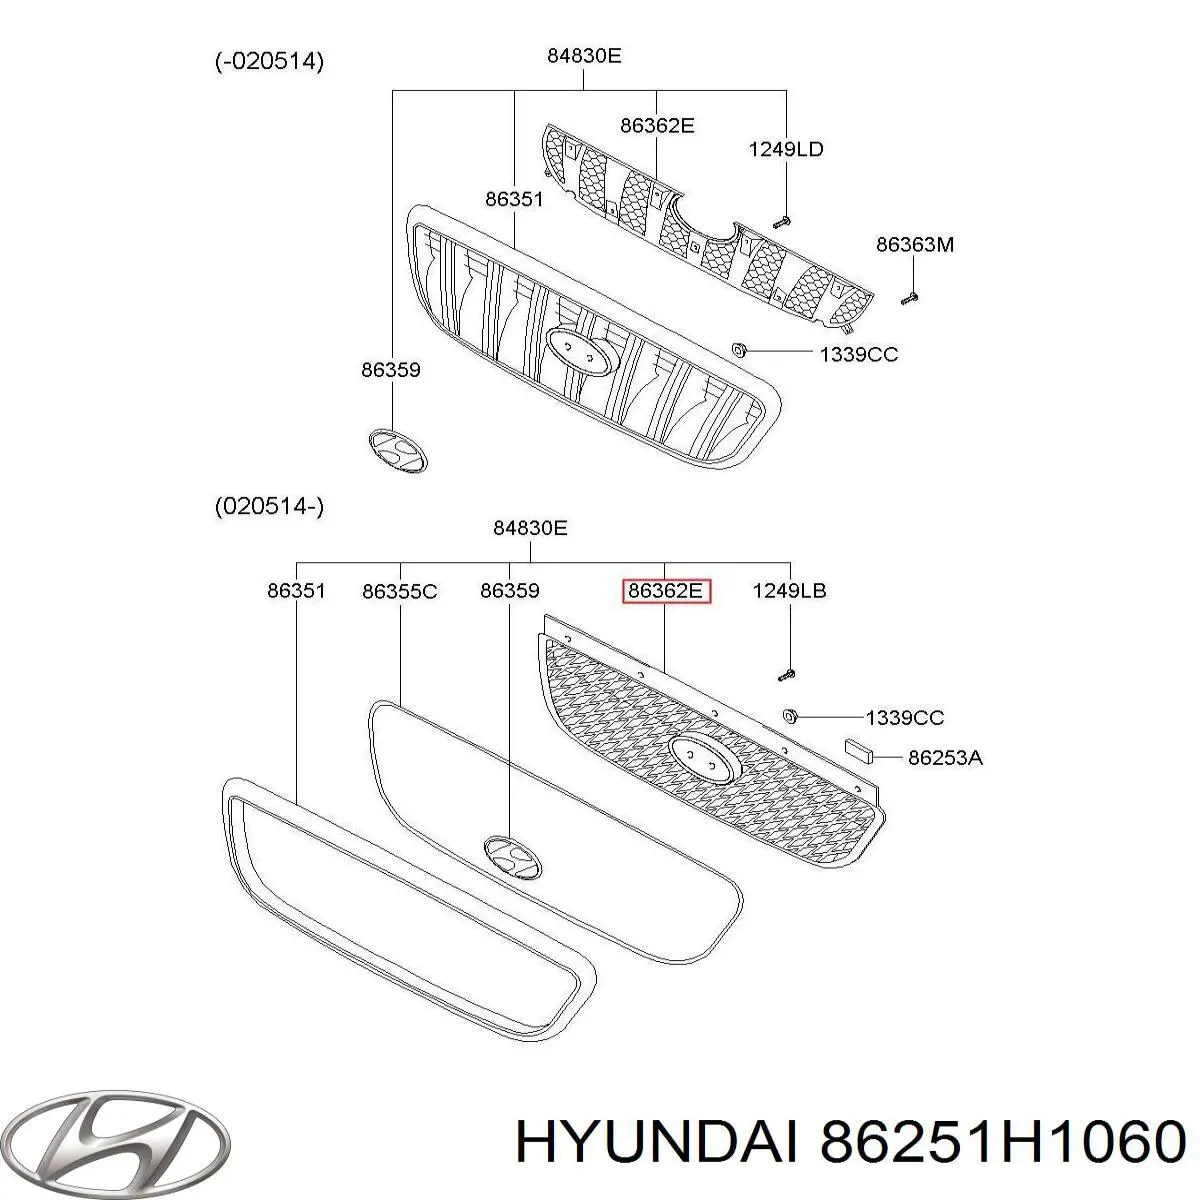 86251H1060 Hyundai/Kia grelha do radiador